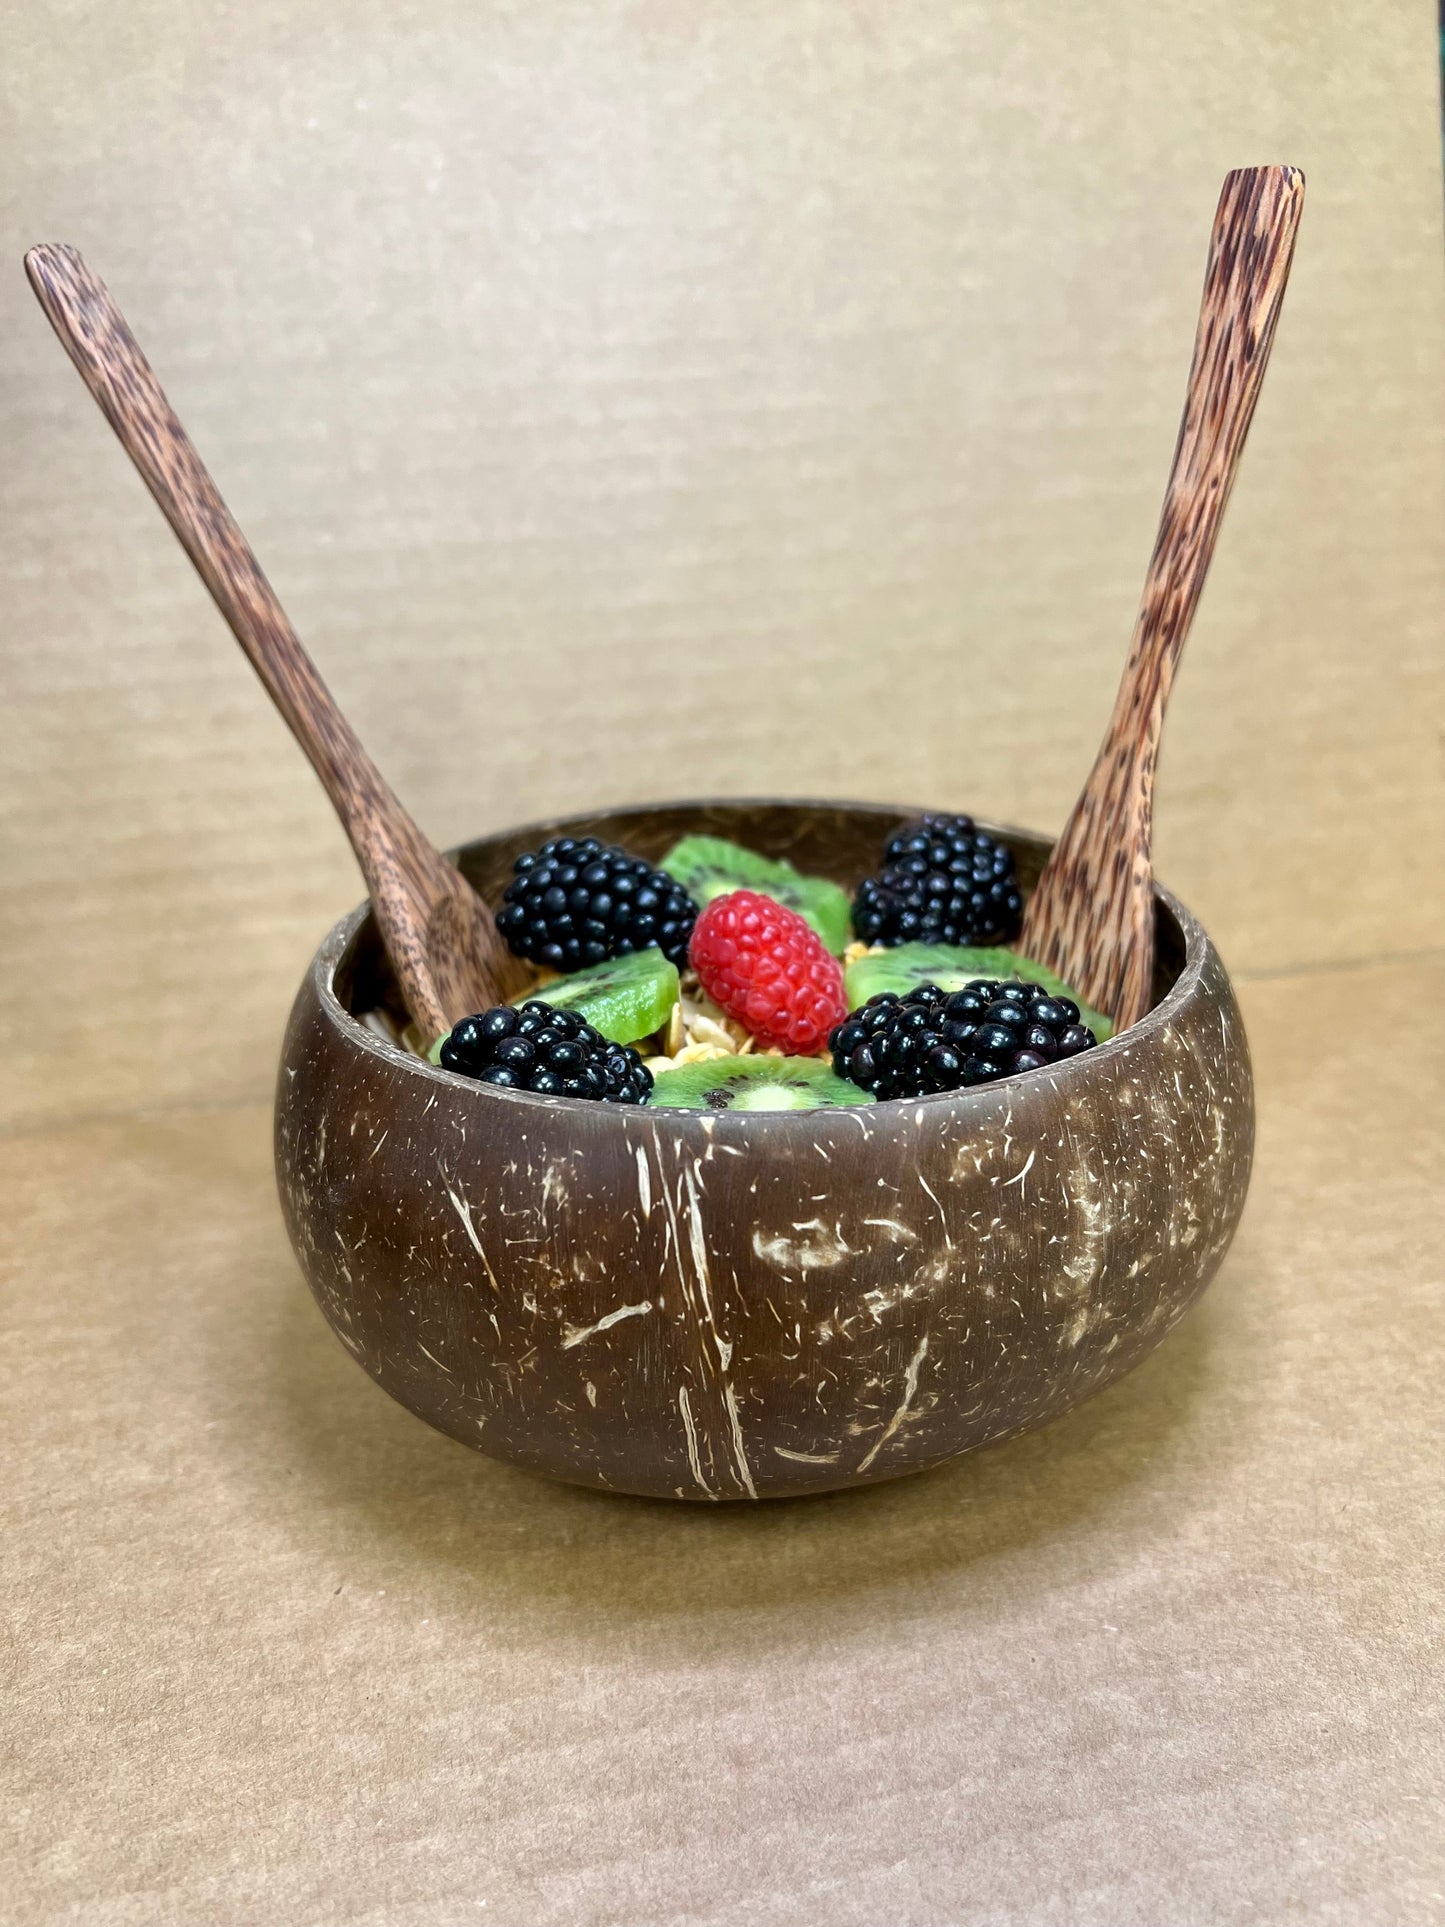 Coconut Bowl Set